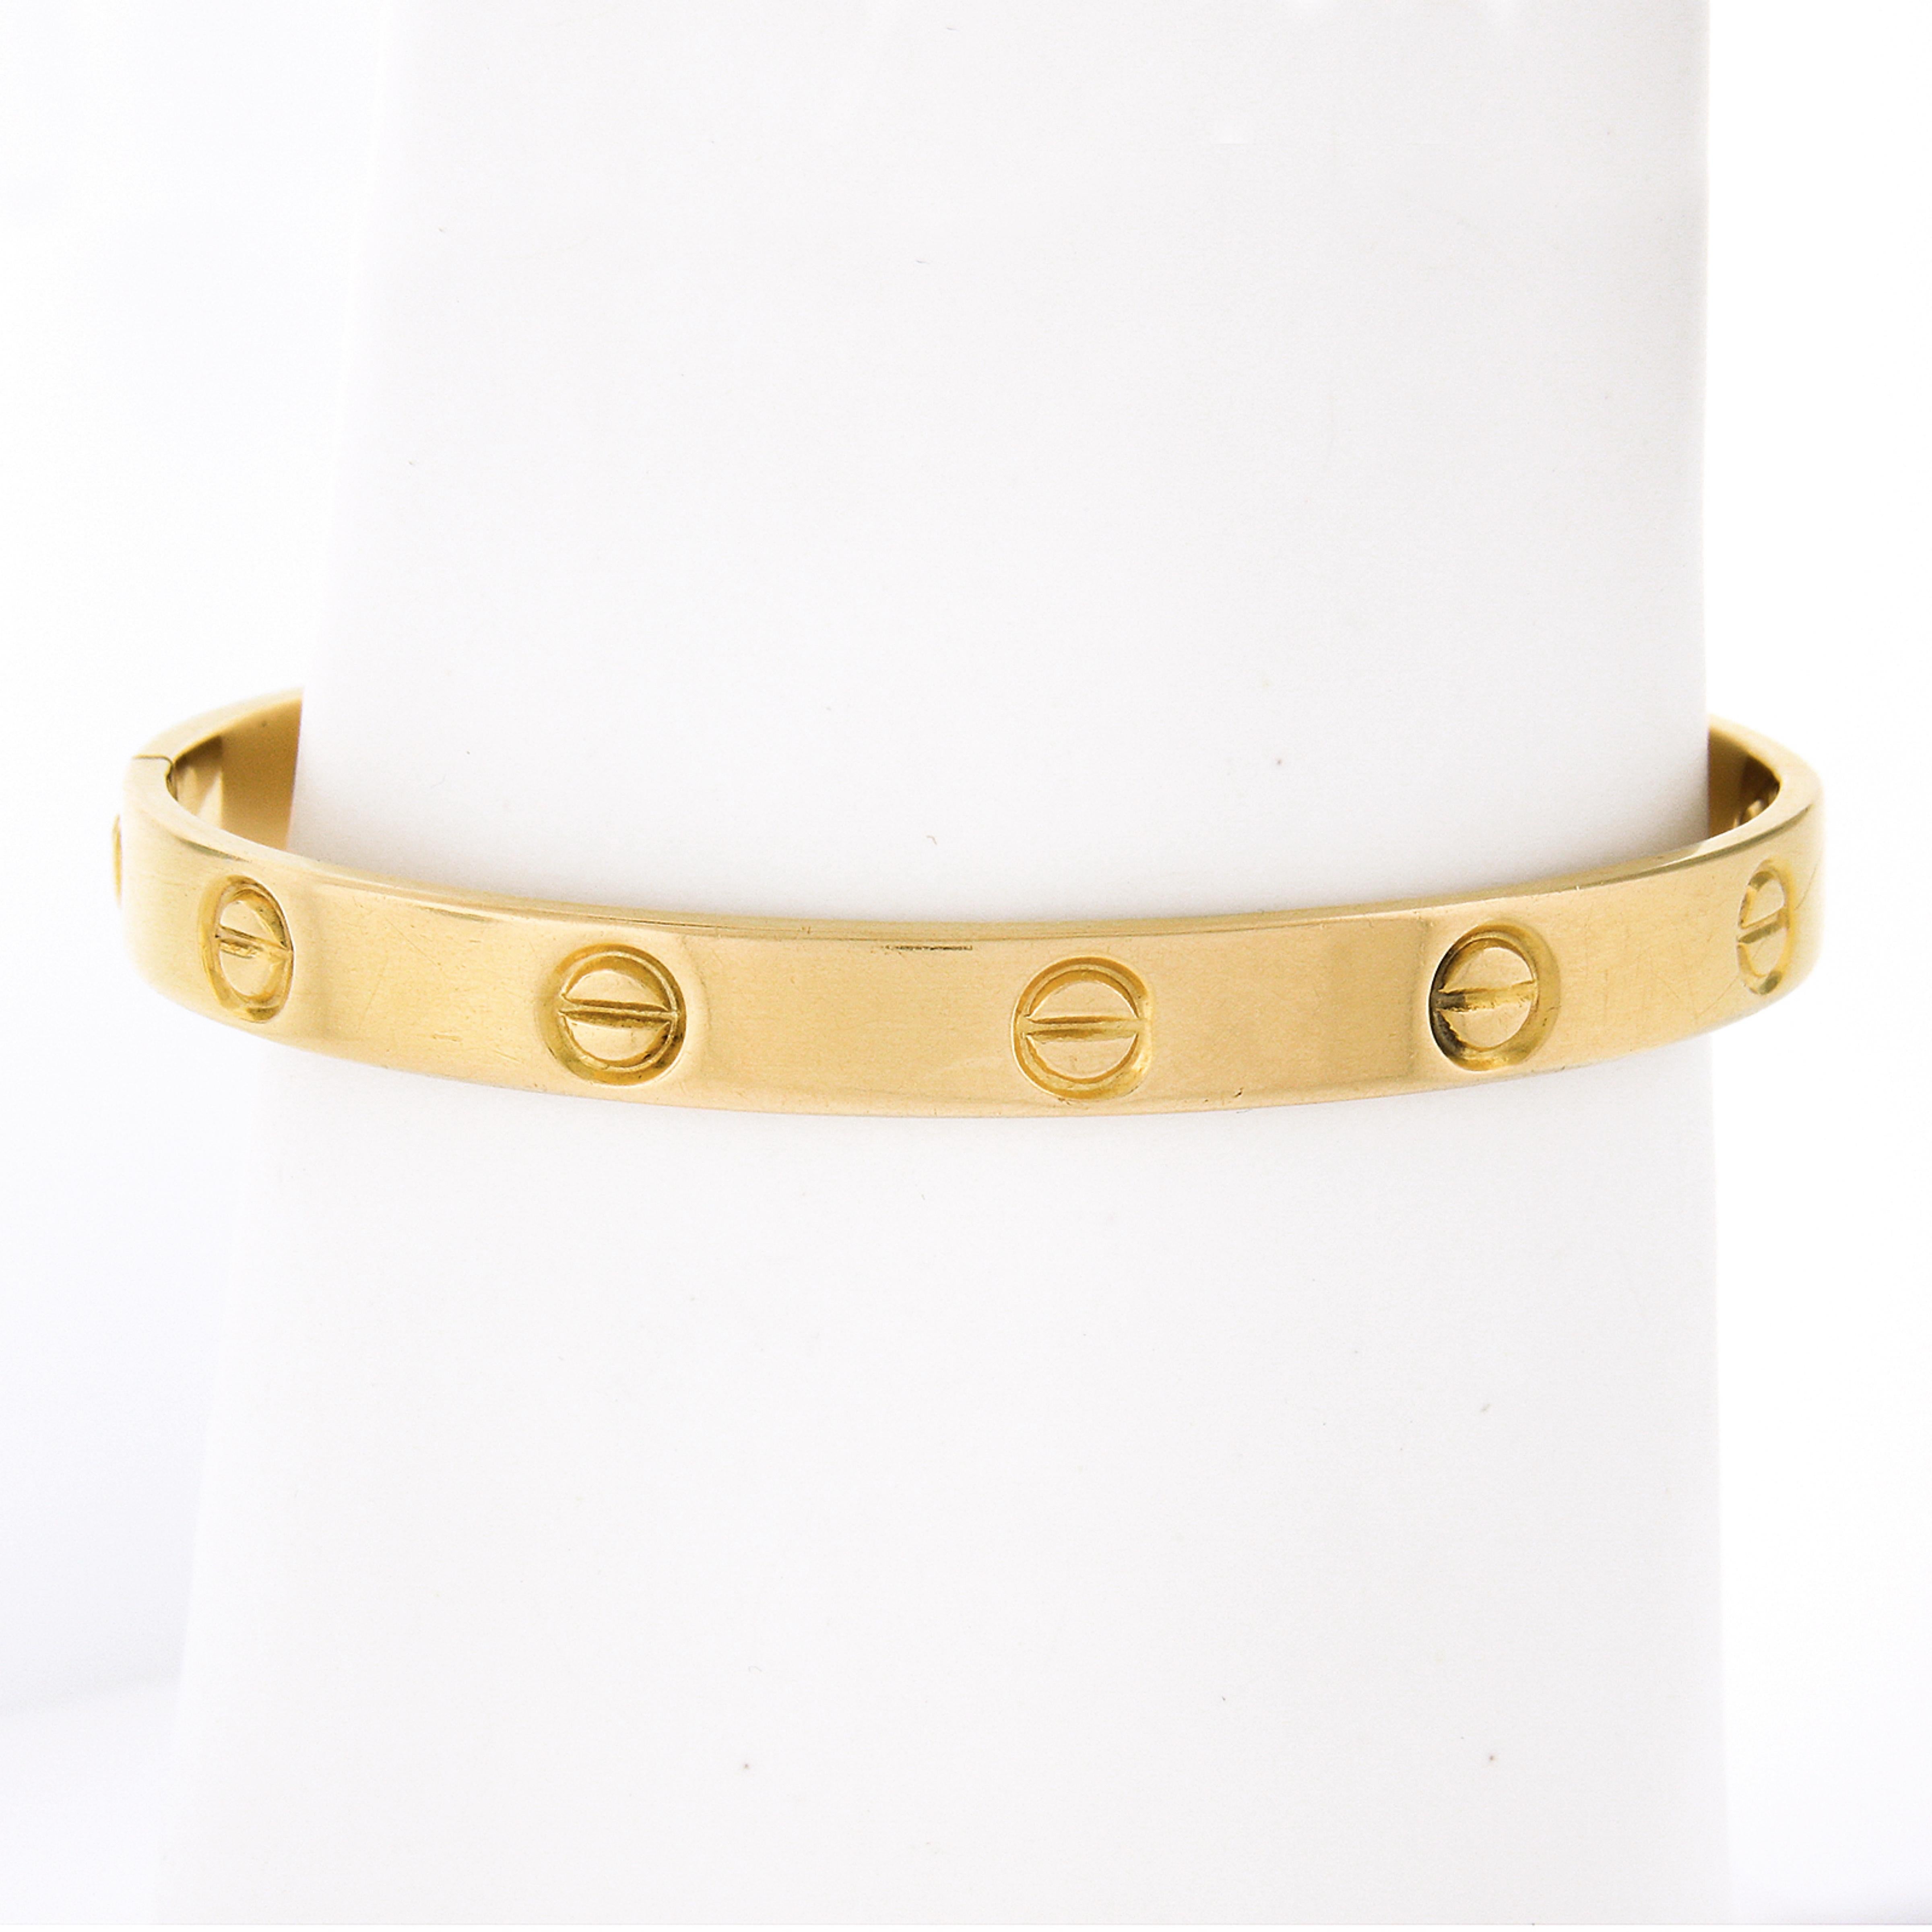 Bracelet d'amour Cartier de fabrication française, de première production, datant de 1970, conçu par Aldo Cipullo et réalisé en or jaune massif 18 carats. Un design simple et emblématique qui est toujours produit par Cartier aujourd'hui. Le bracelet